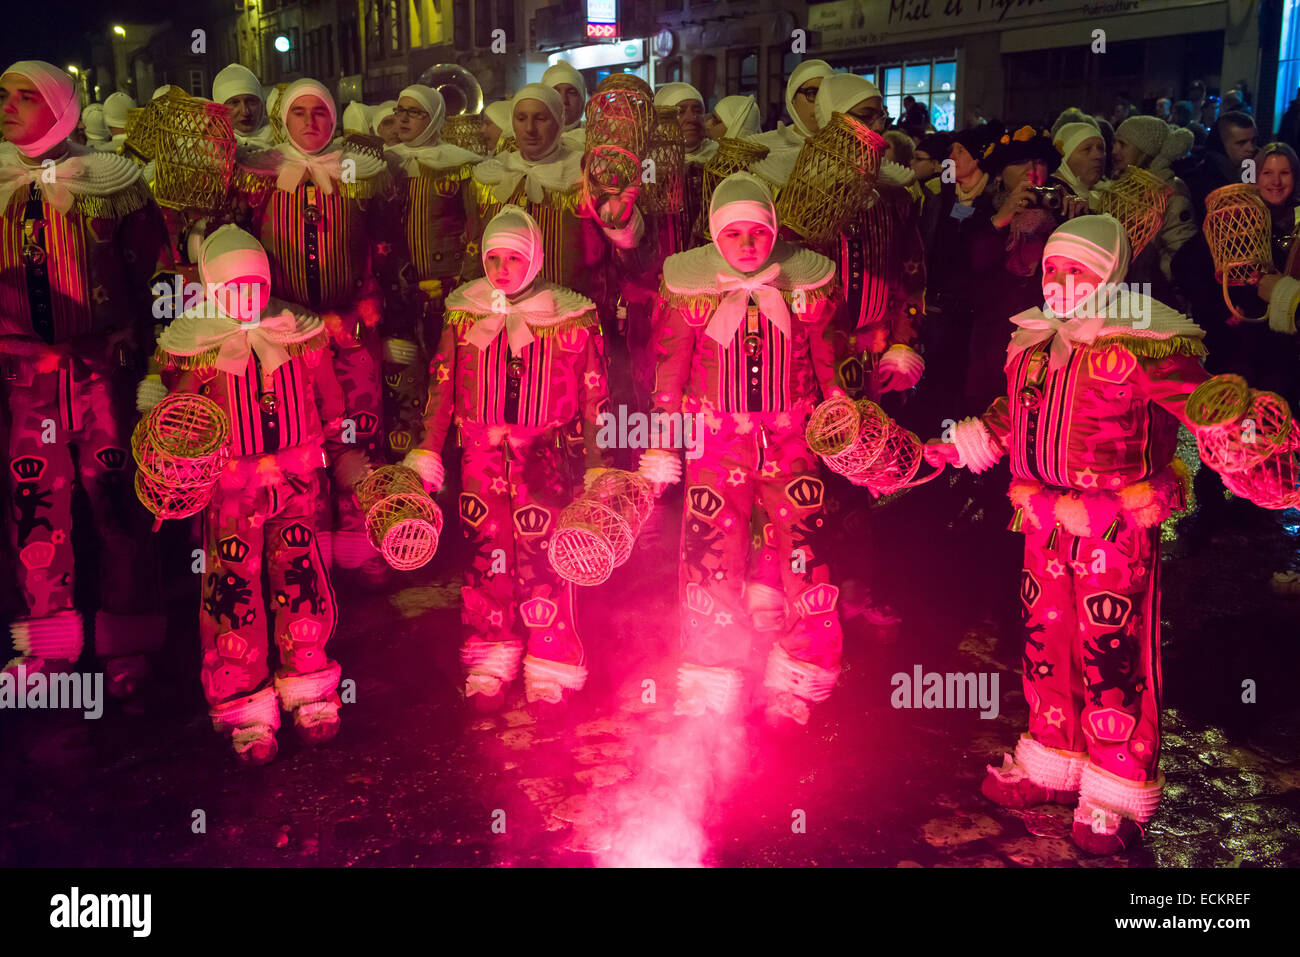 Les jeunes Gilles dansant dans la lumière d'un feu d'artifice rouge au cours d'une procession nocturne, Binche Carnaval, Binche, Belgique Banque D'Images